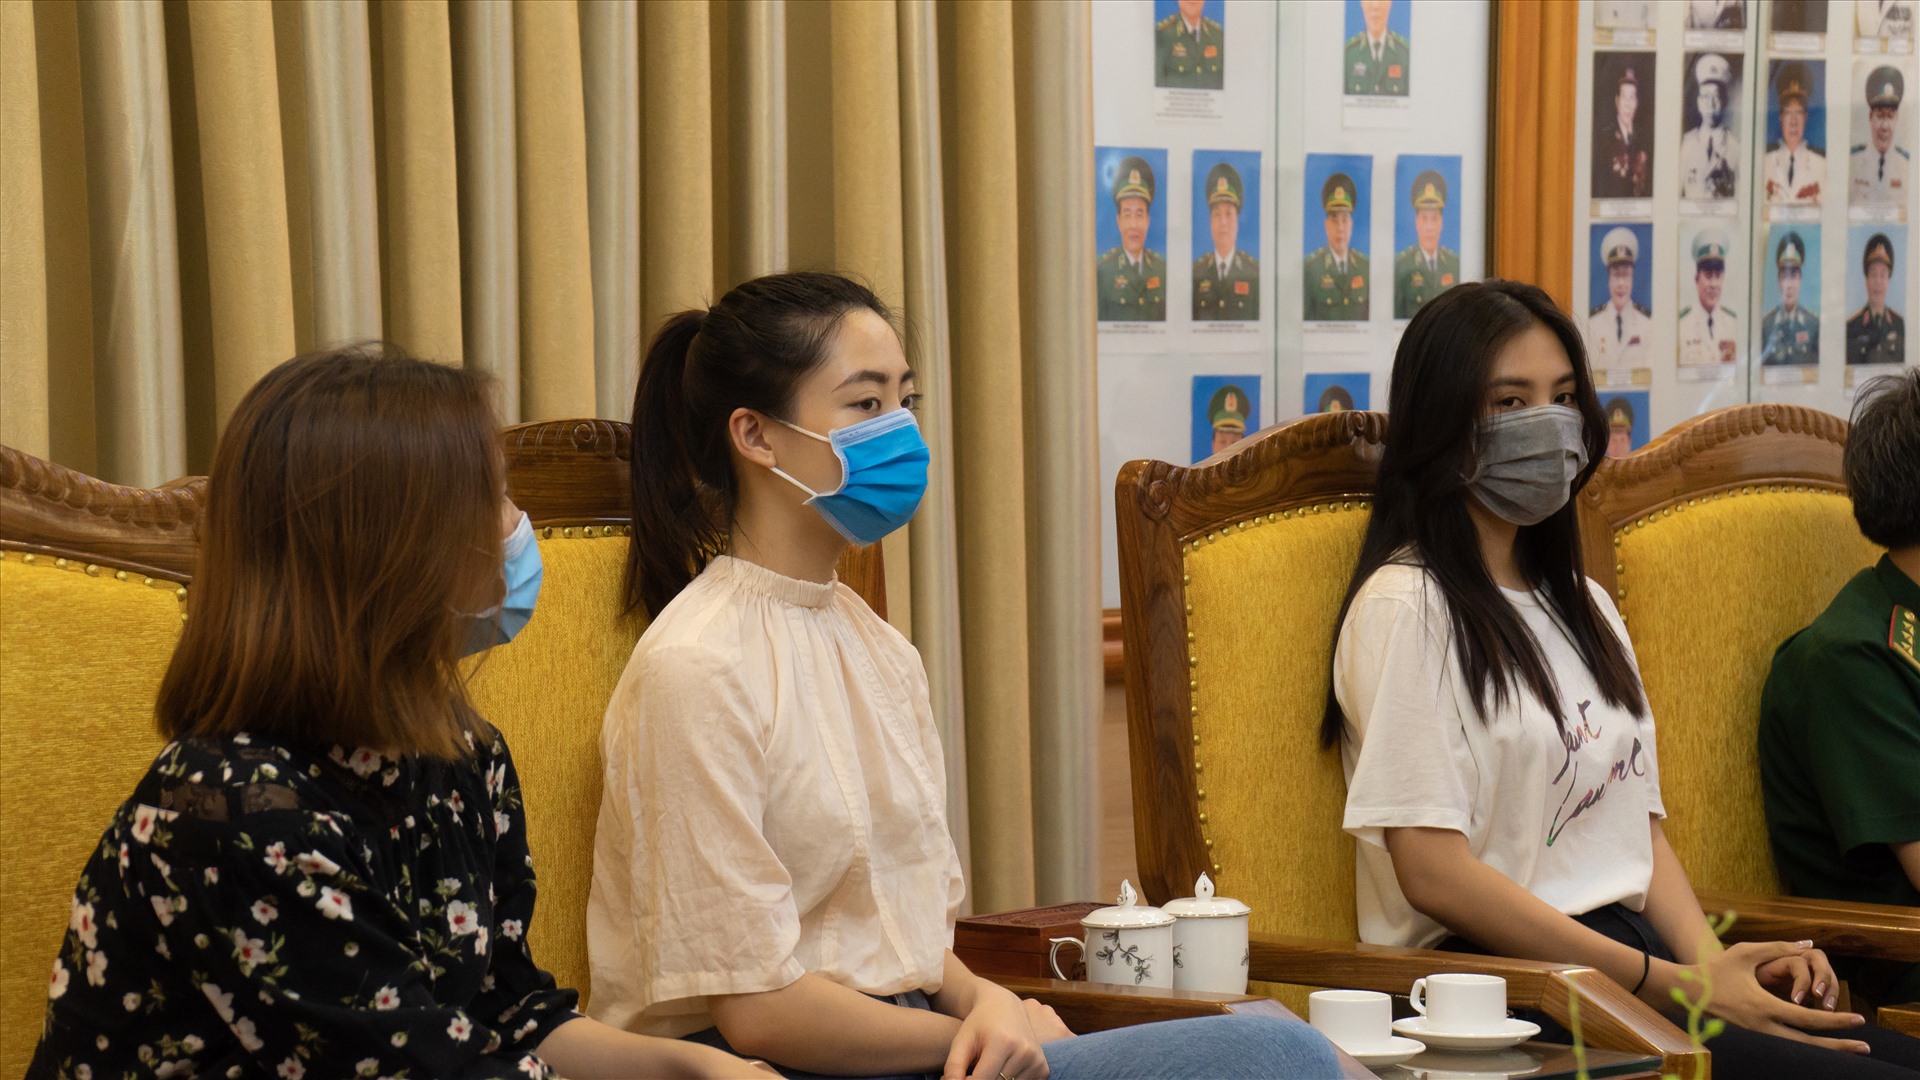 Hoa hậu Tiểu Vy và Lương Thuỳ Linh cùng đồng hành tặng thiết bị y tế cho các chiến sĩ biên phòng. Ảnh: Sen vàng.